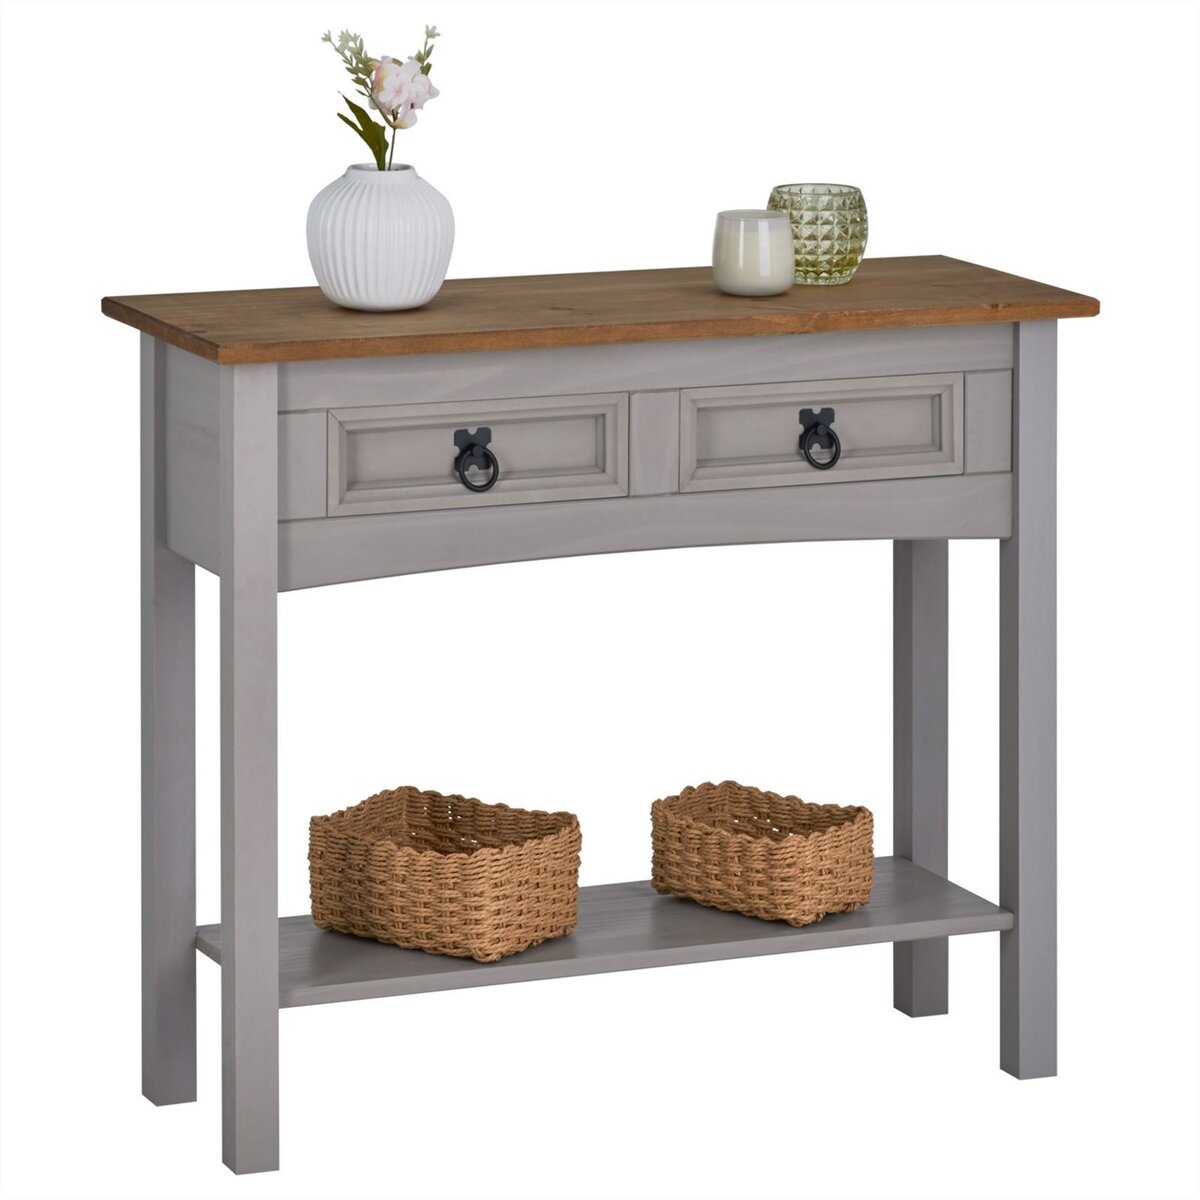 IDIMEX Table console RAMON table d'appoint rectangulaire en pin massif gris et brun avec 2 tiroirs, meuble d'entrée style mexicain en bois